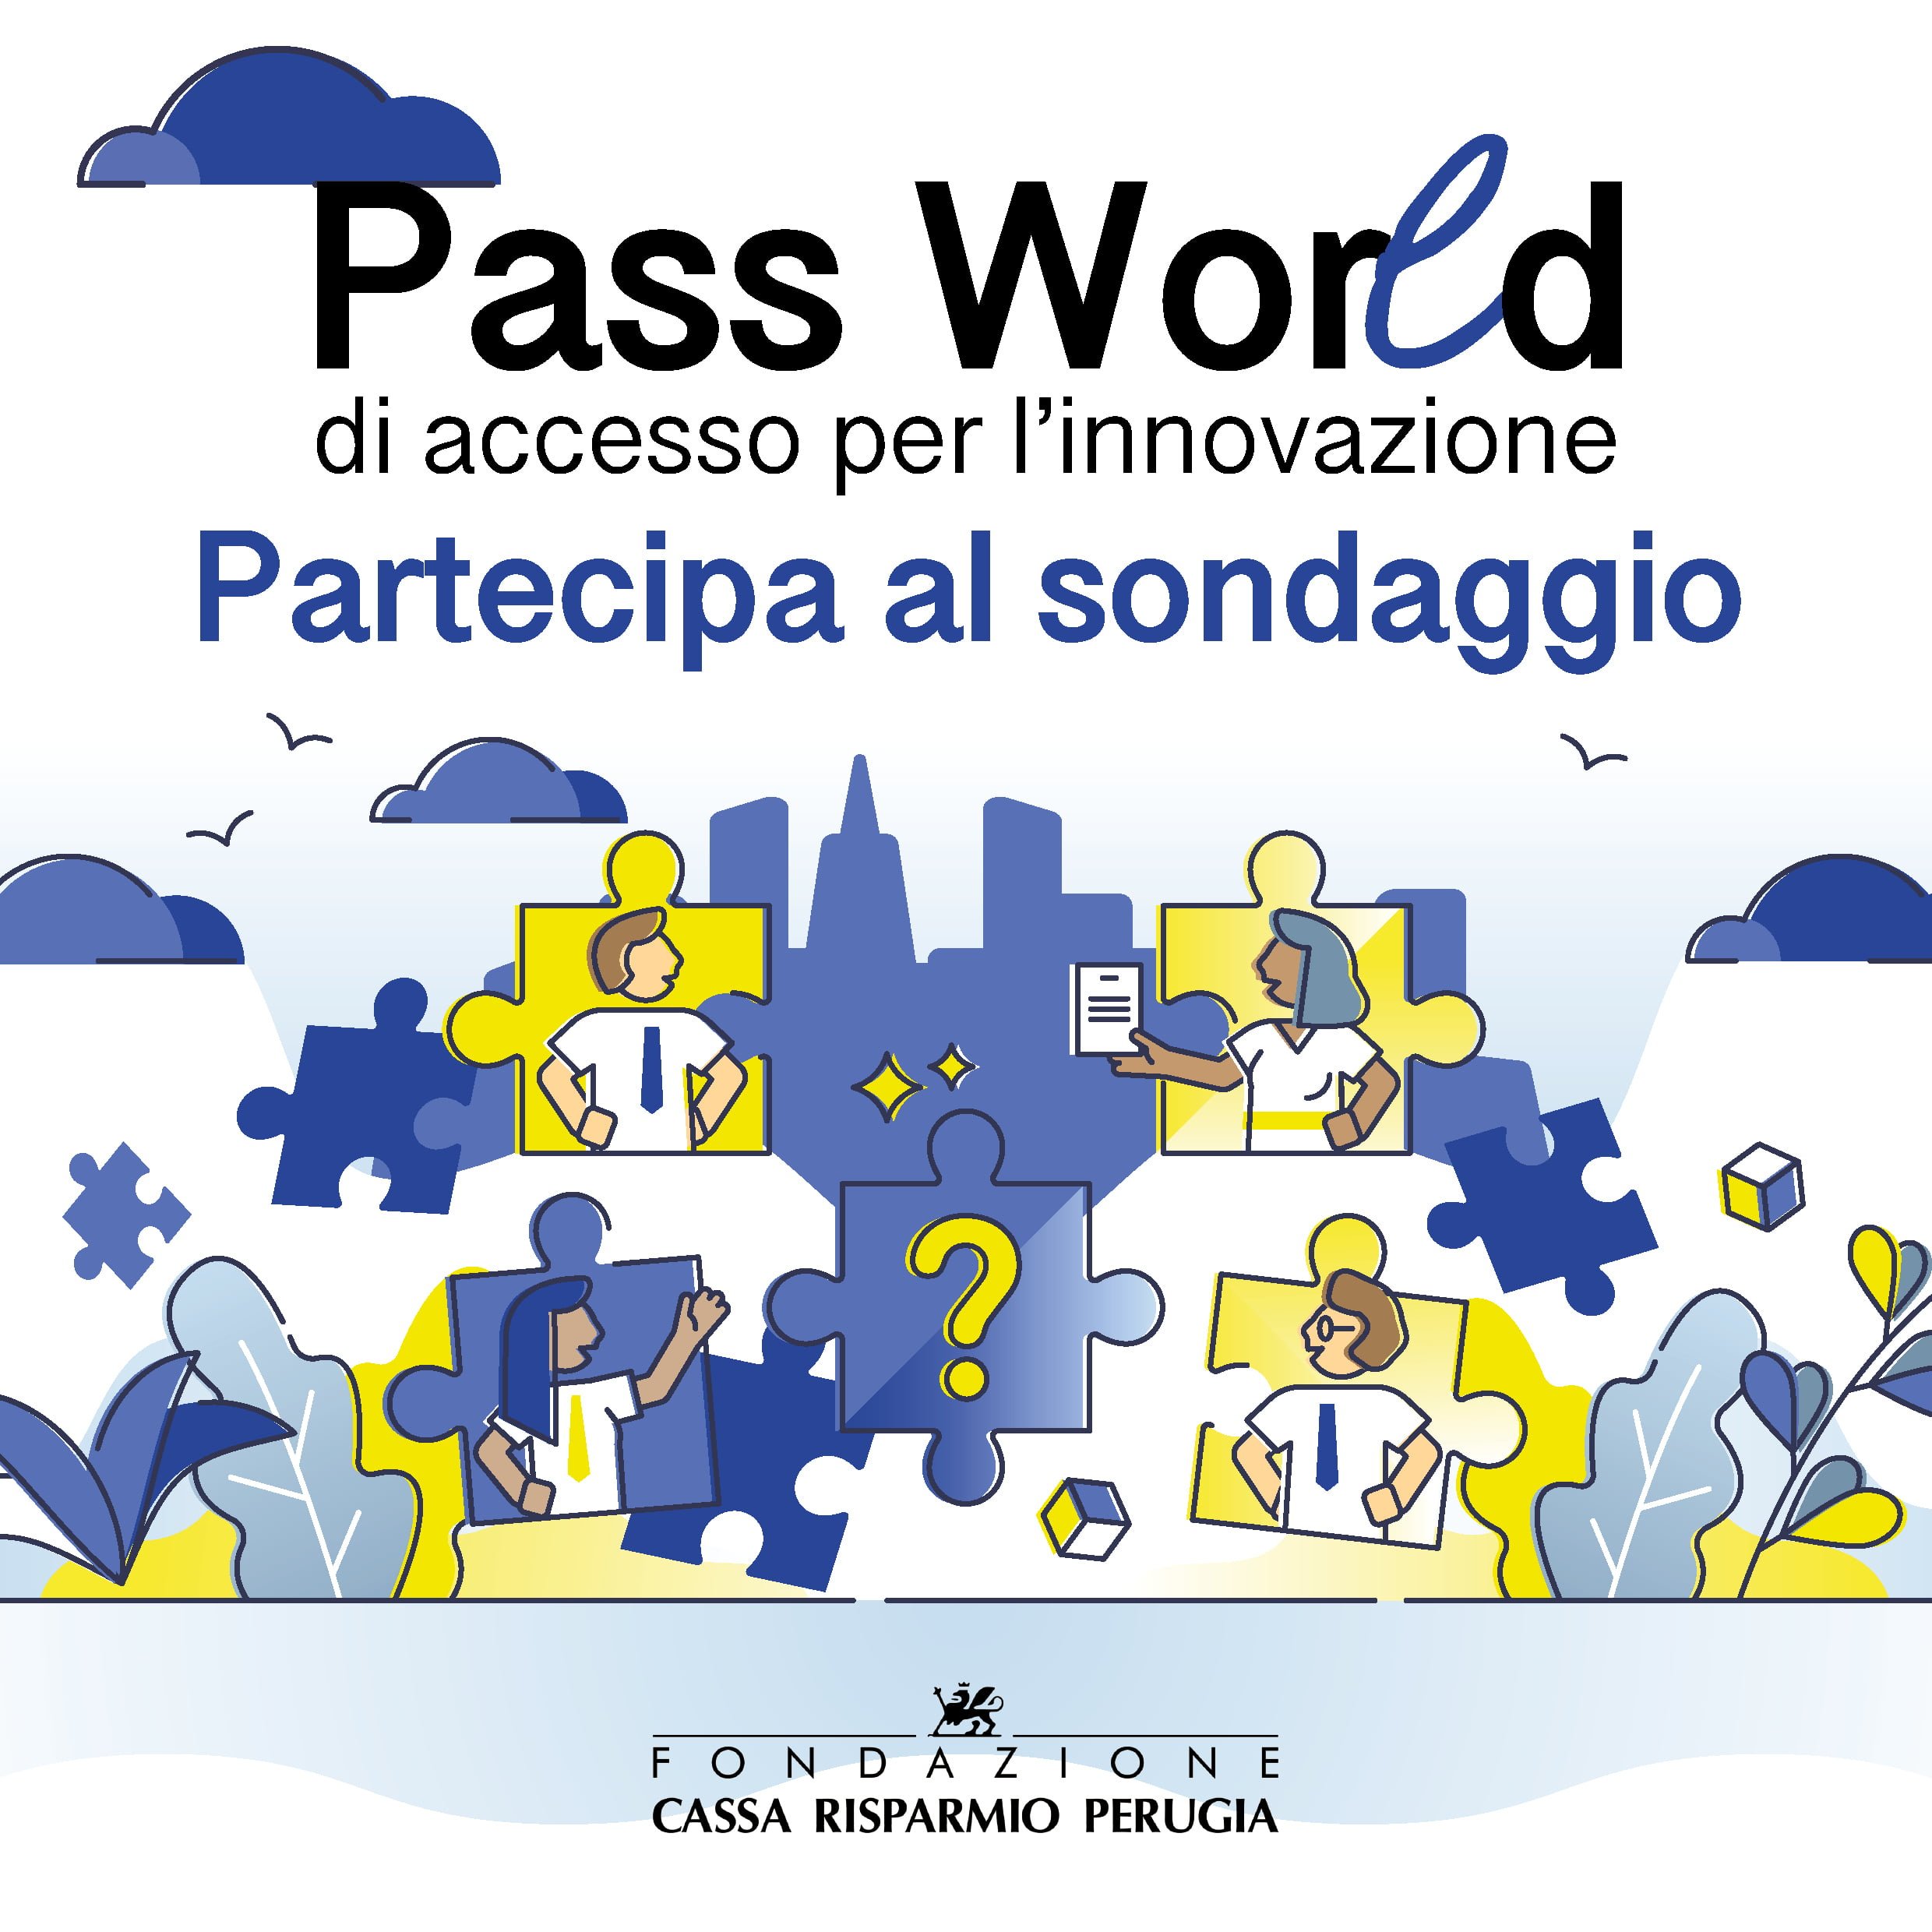 PassWorld di accesso all’innovazione